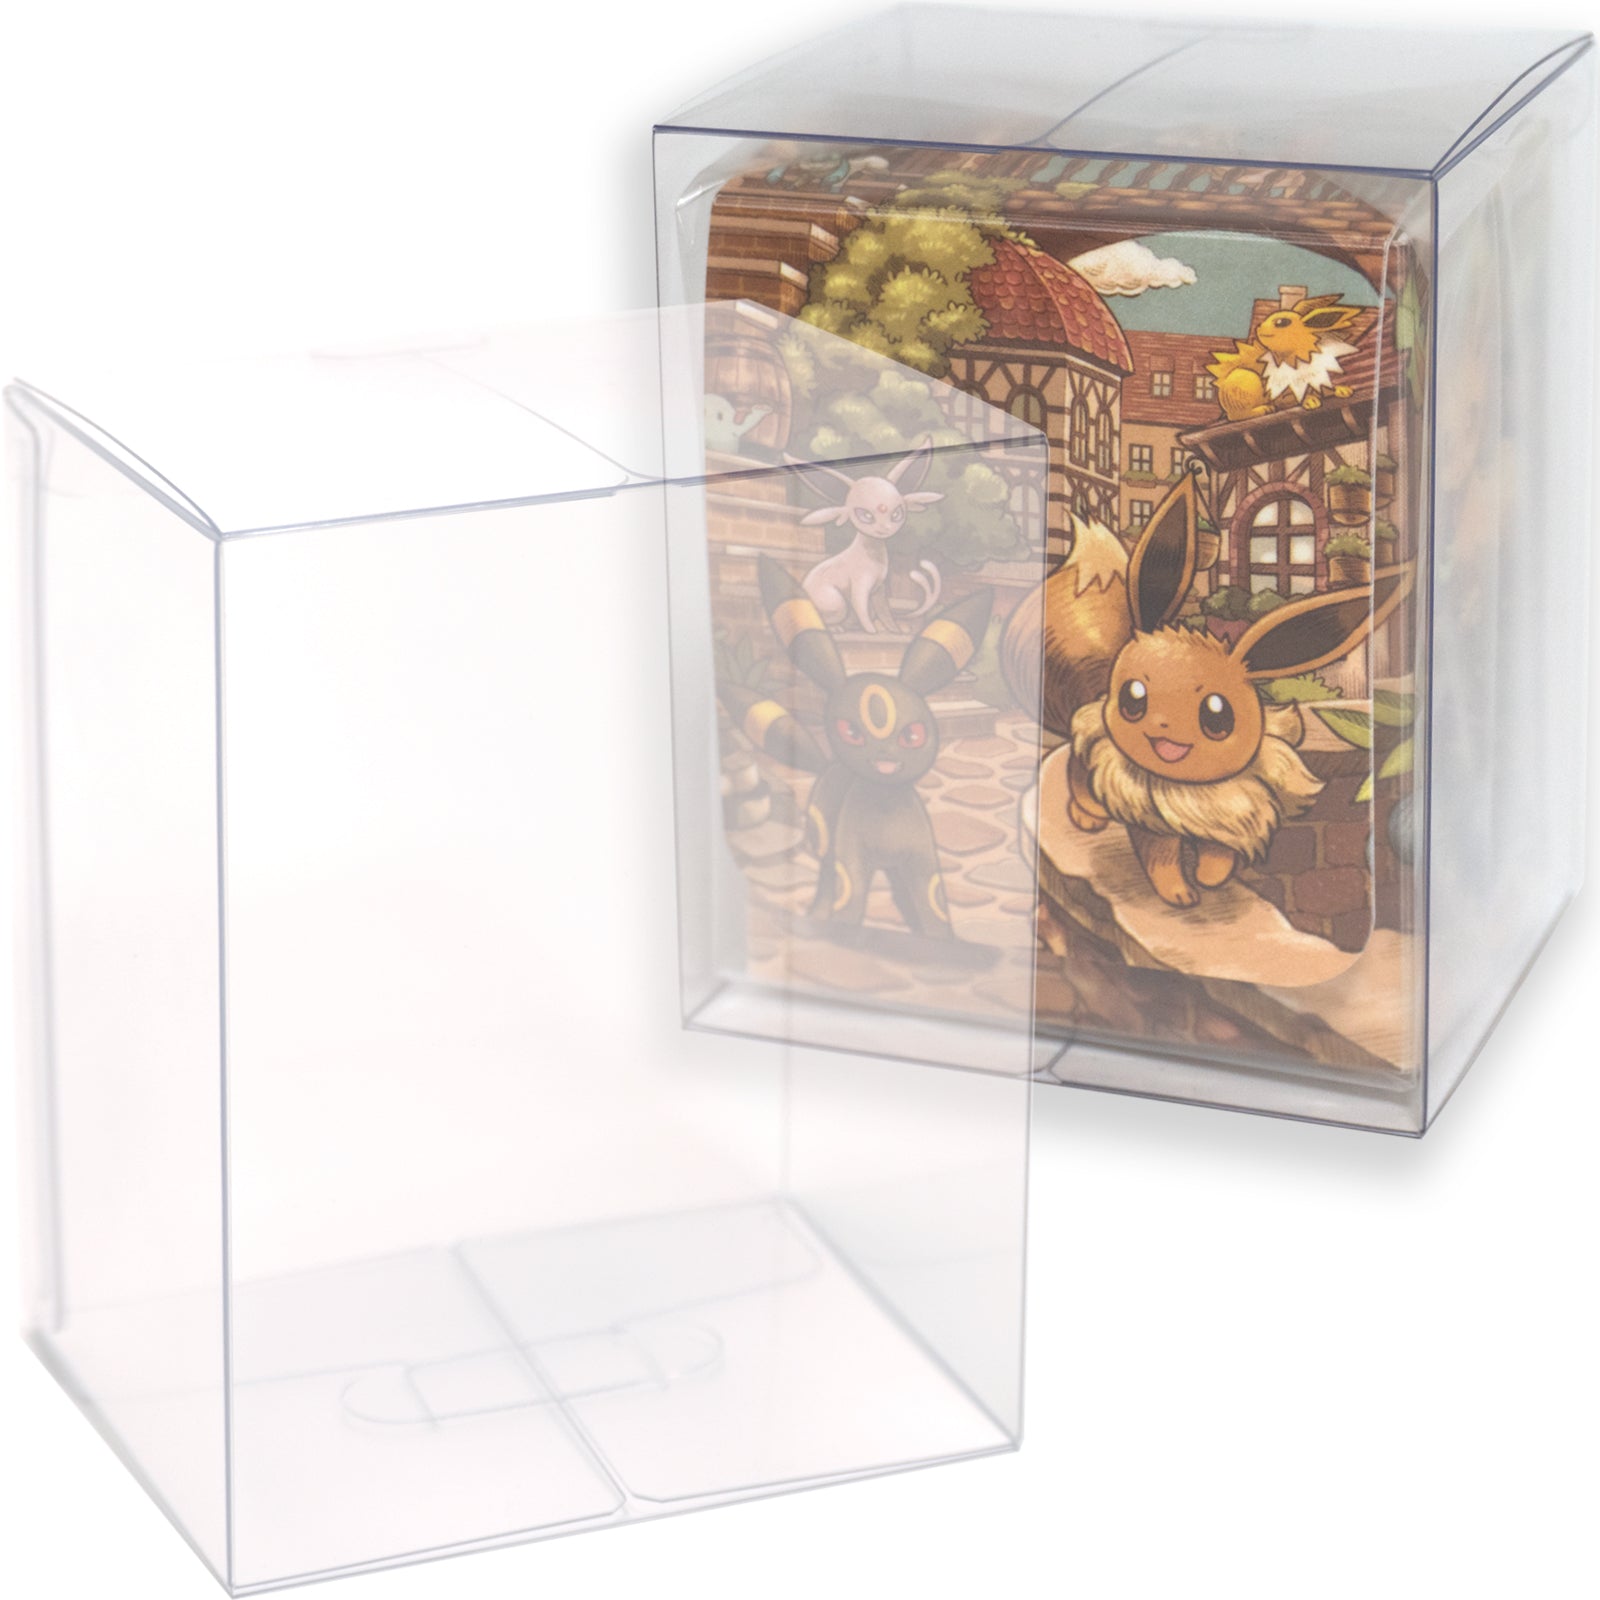 Boxx Guardian ポケモンカードBOX用 デッキケース サイズ